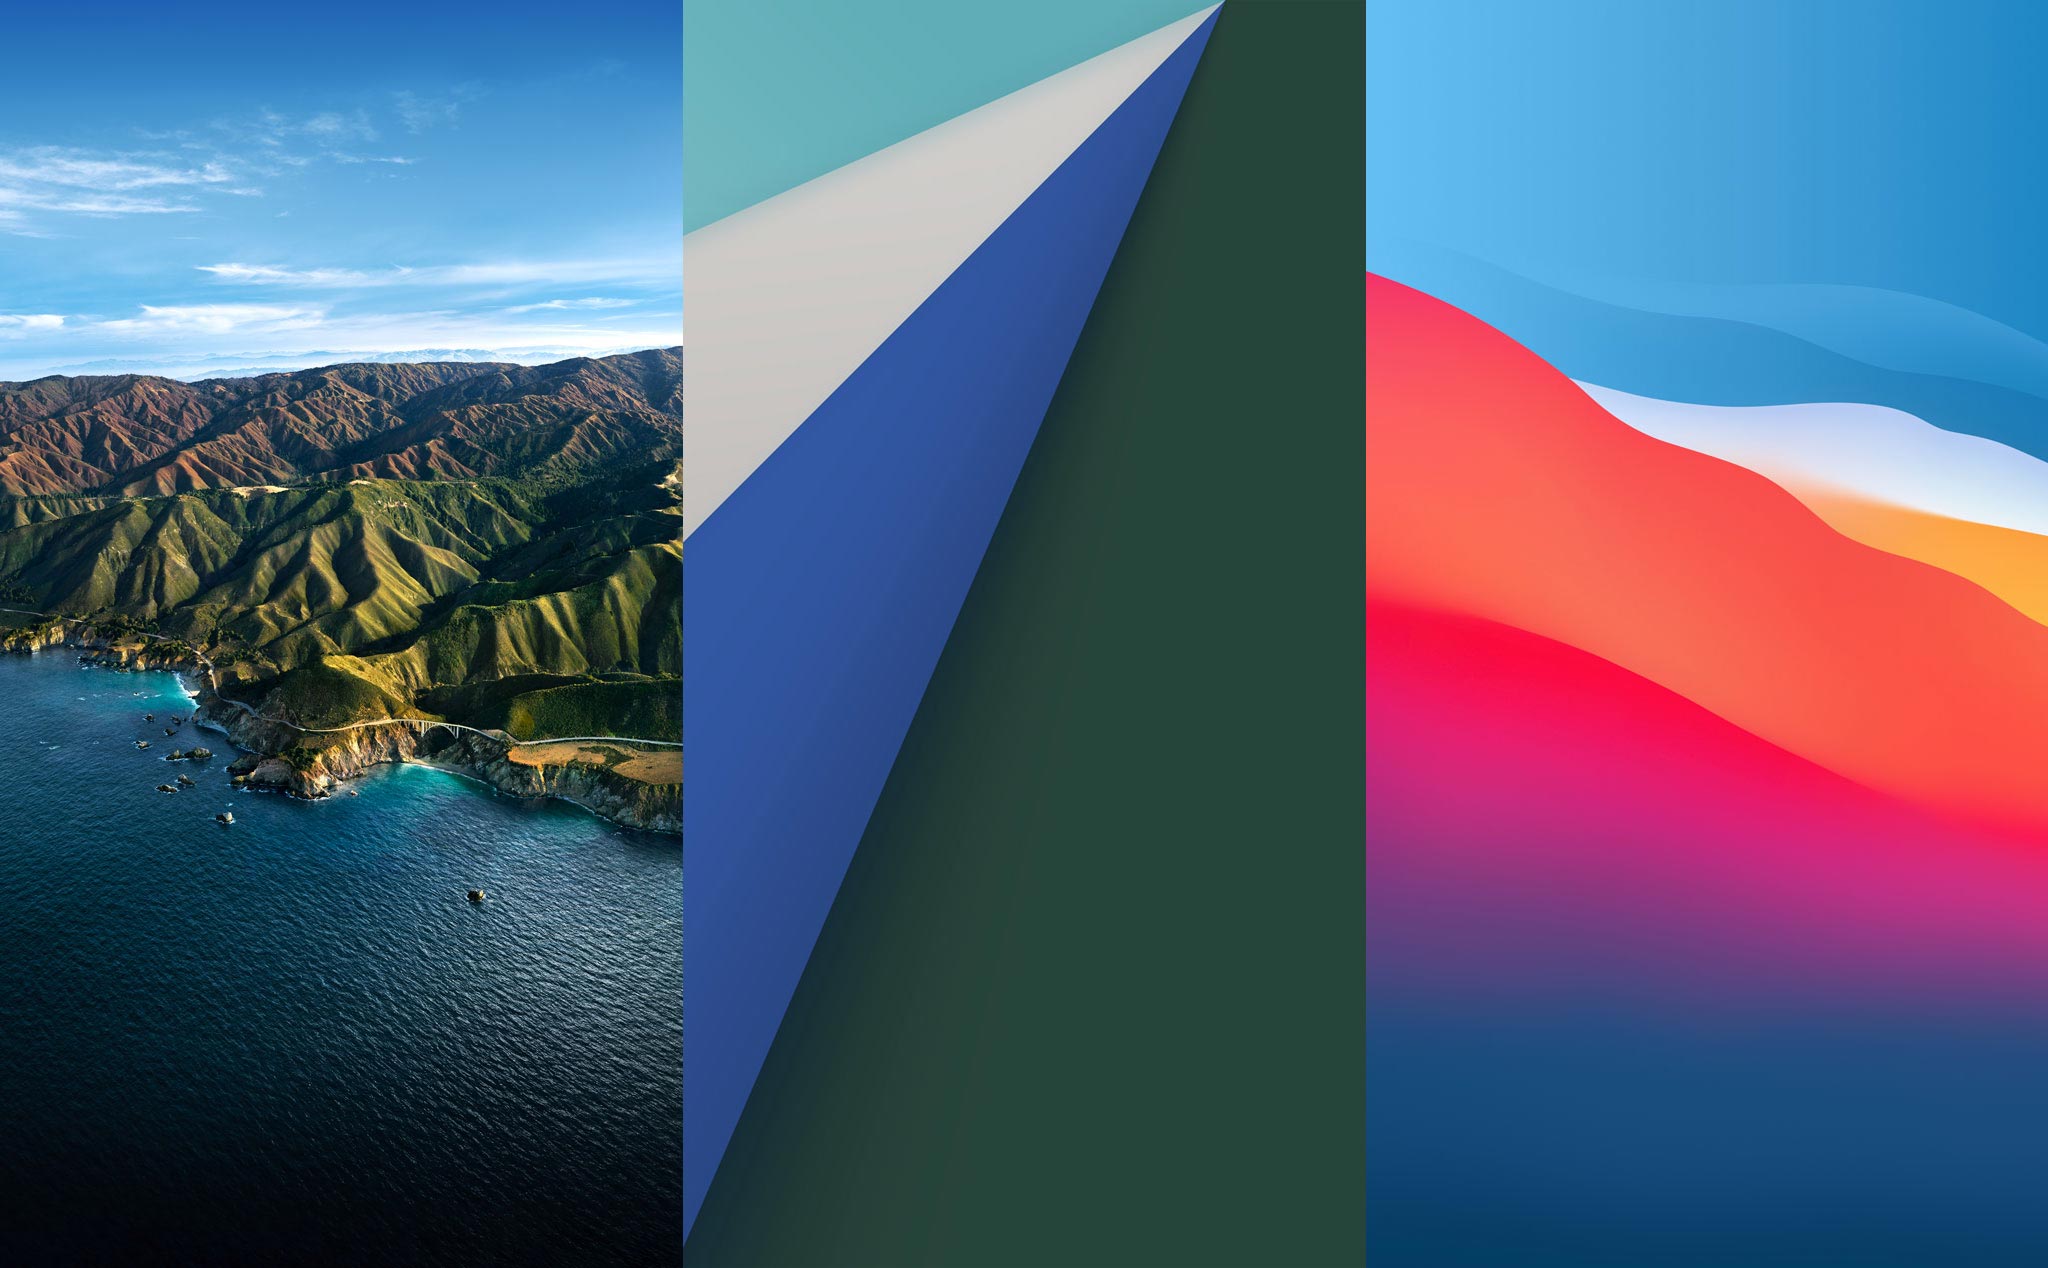 Tải bộ hình nền iOS 14 và Big Sur cho iPhone cực đẹp